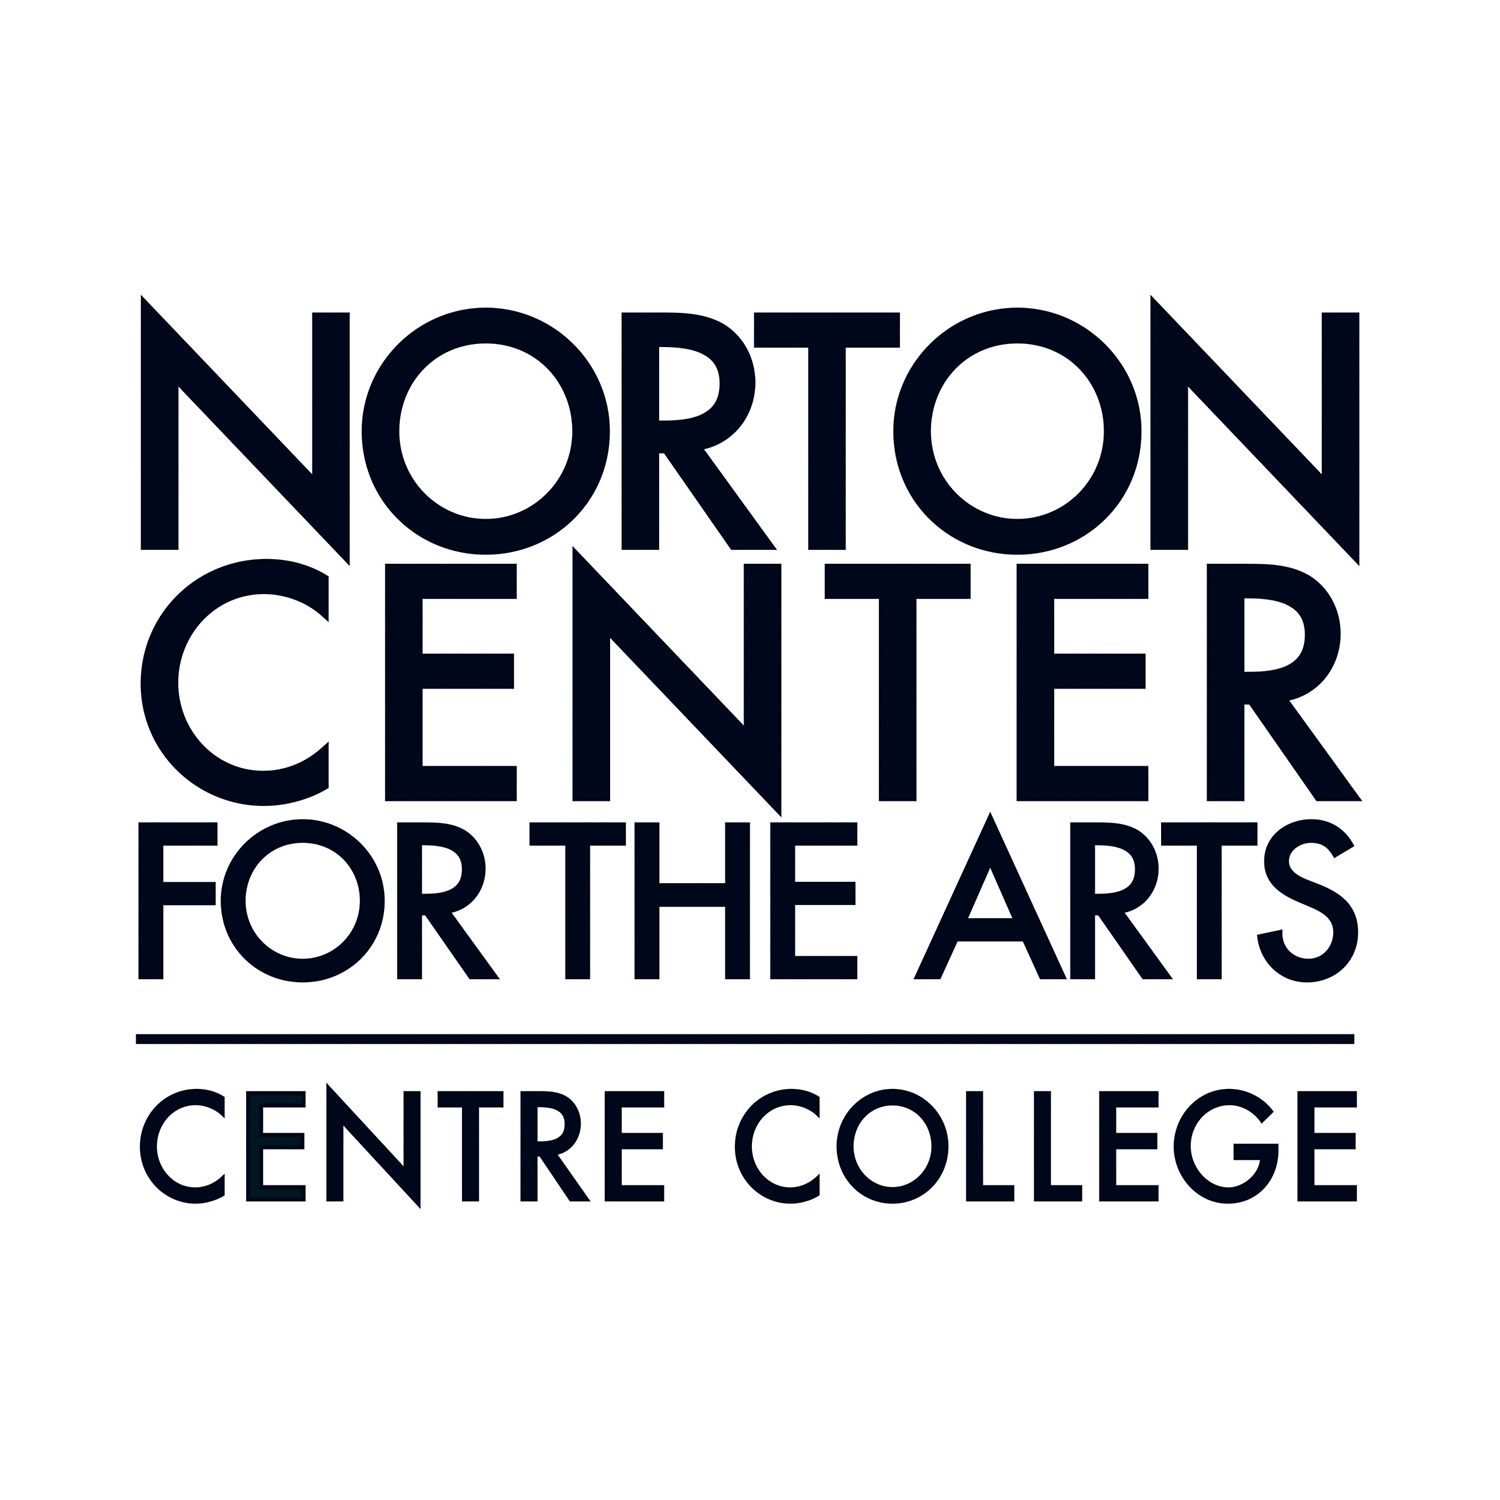 (c) Nortoncenter.com